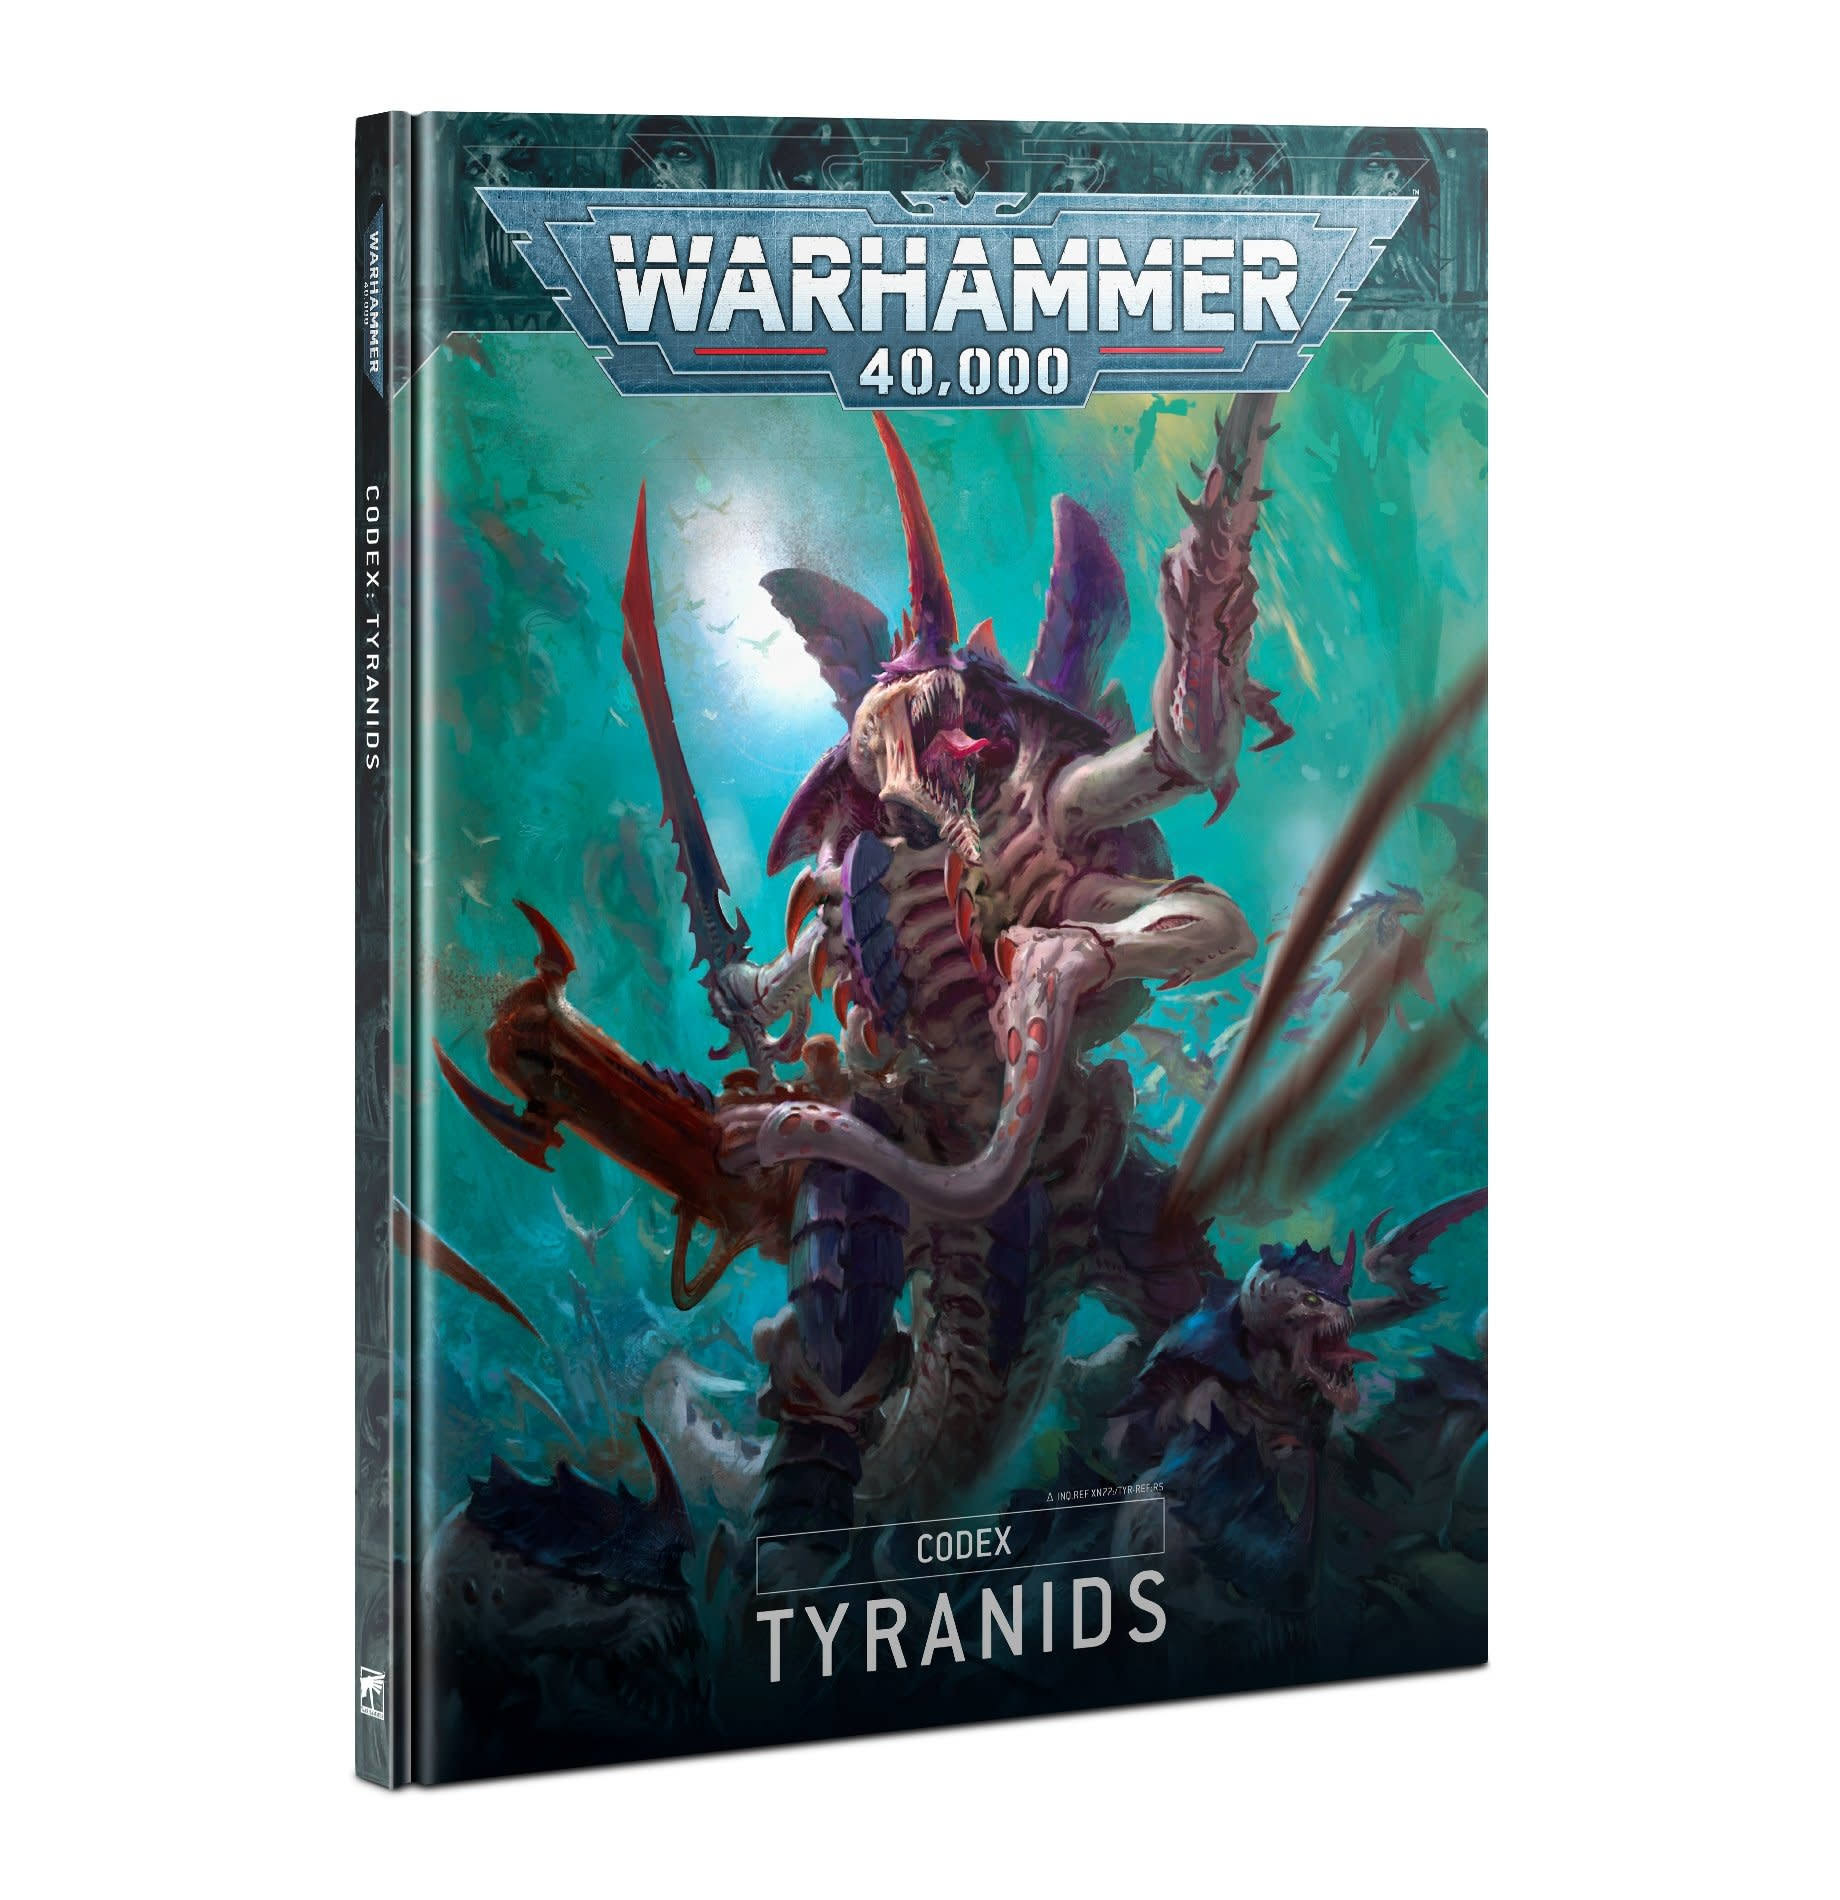 Warhammer 40,000 Codex: Tyranids